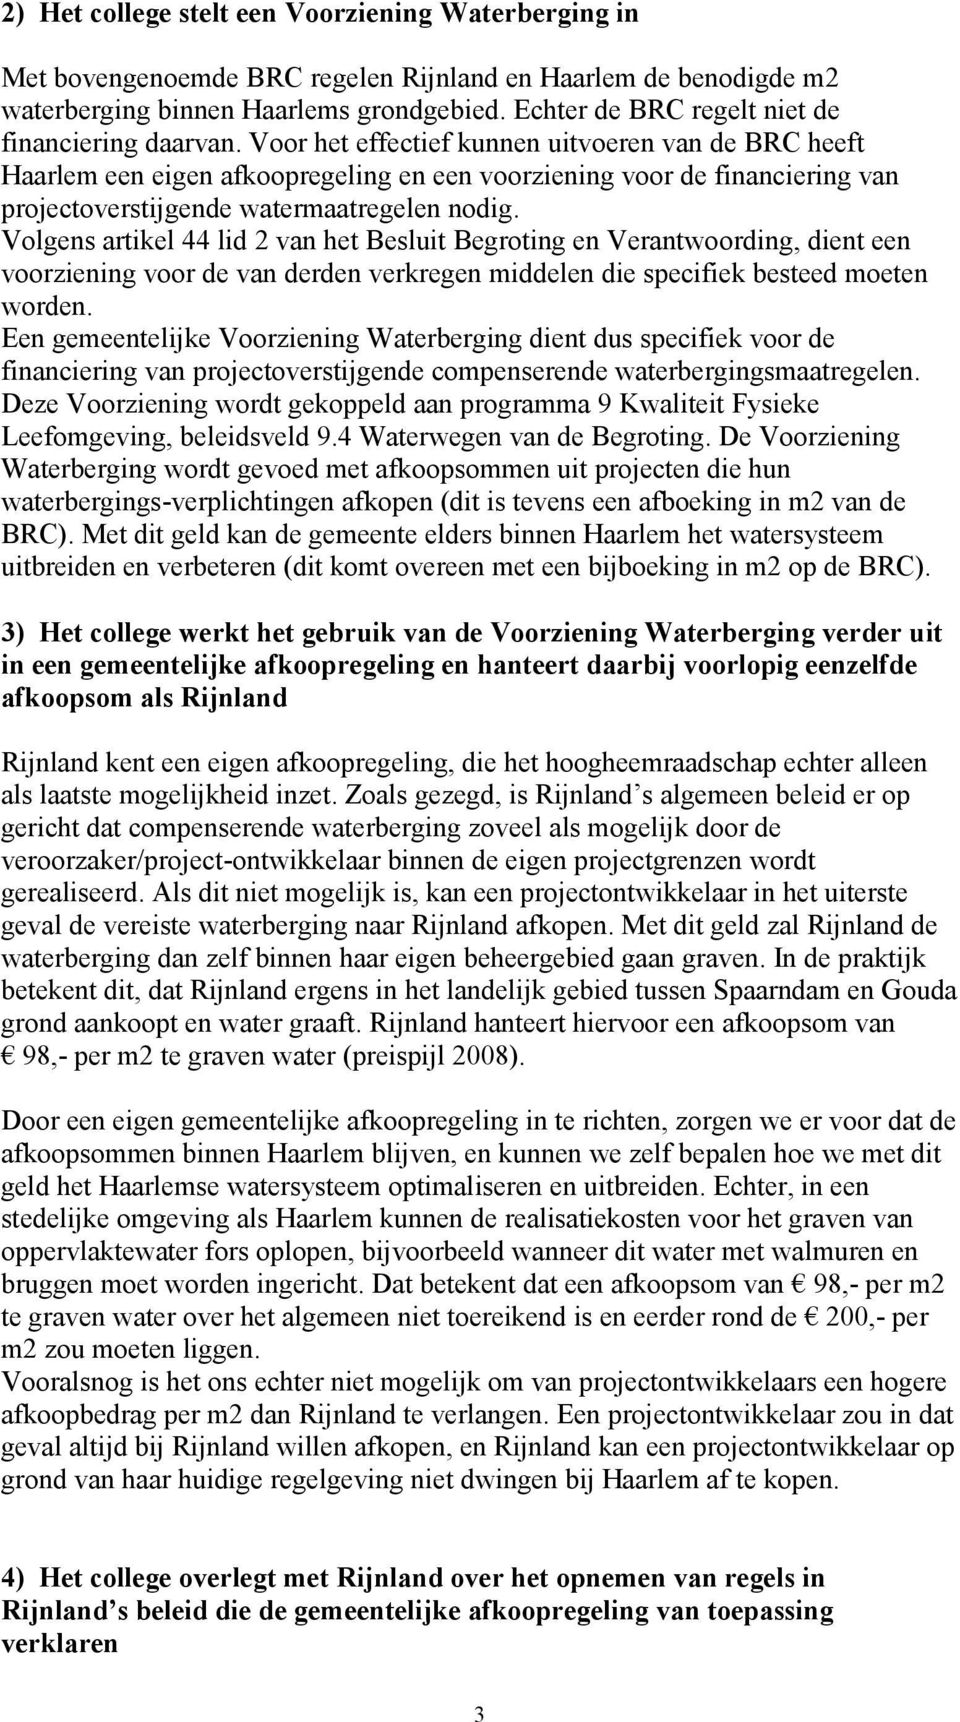 Voor het effectief kunnen uitvoeren van de BRC heeft Haarlem een eigen afkoopregeling en een voorziening voor de financiering van projectoverstijgende watermaatregelen nodig.